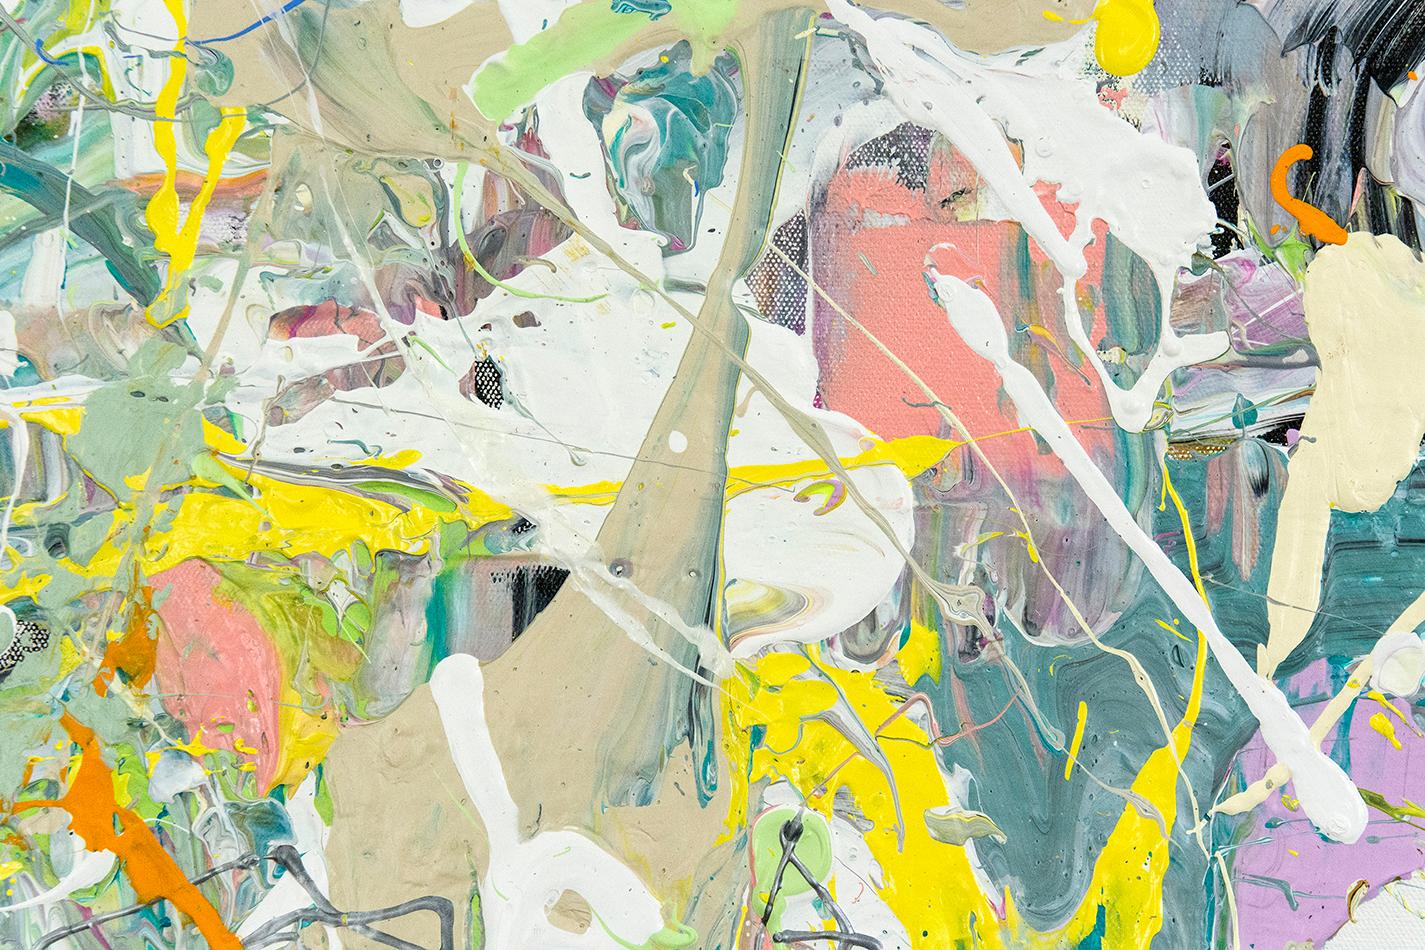 Schnelle Passagen, Tropfen und Linien in Rosa, Gelb, Pastellgrün und Taubengrau sind eine Erweiterung des Pinsels in diesem dynamischen Action Painting von Adam Cohen. 

Der in New York lebende Künstler Adam Cohen schafft Werke, die von den